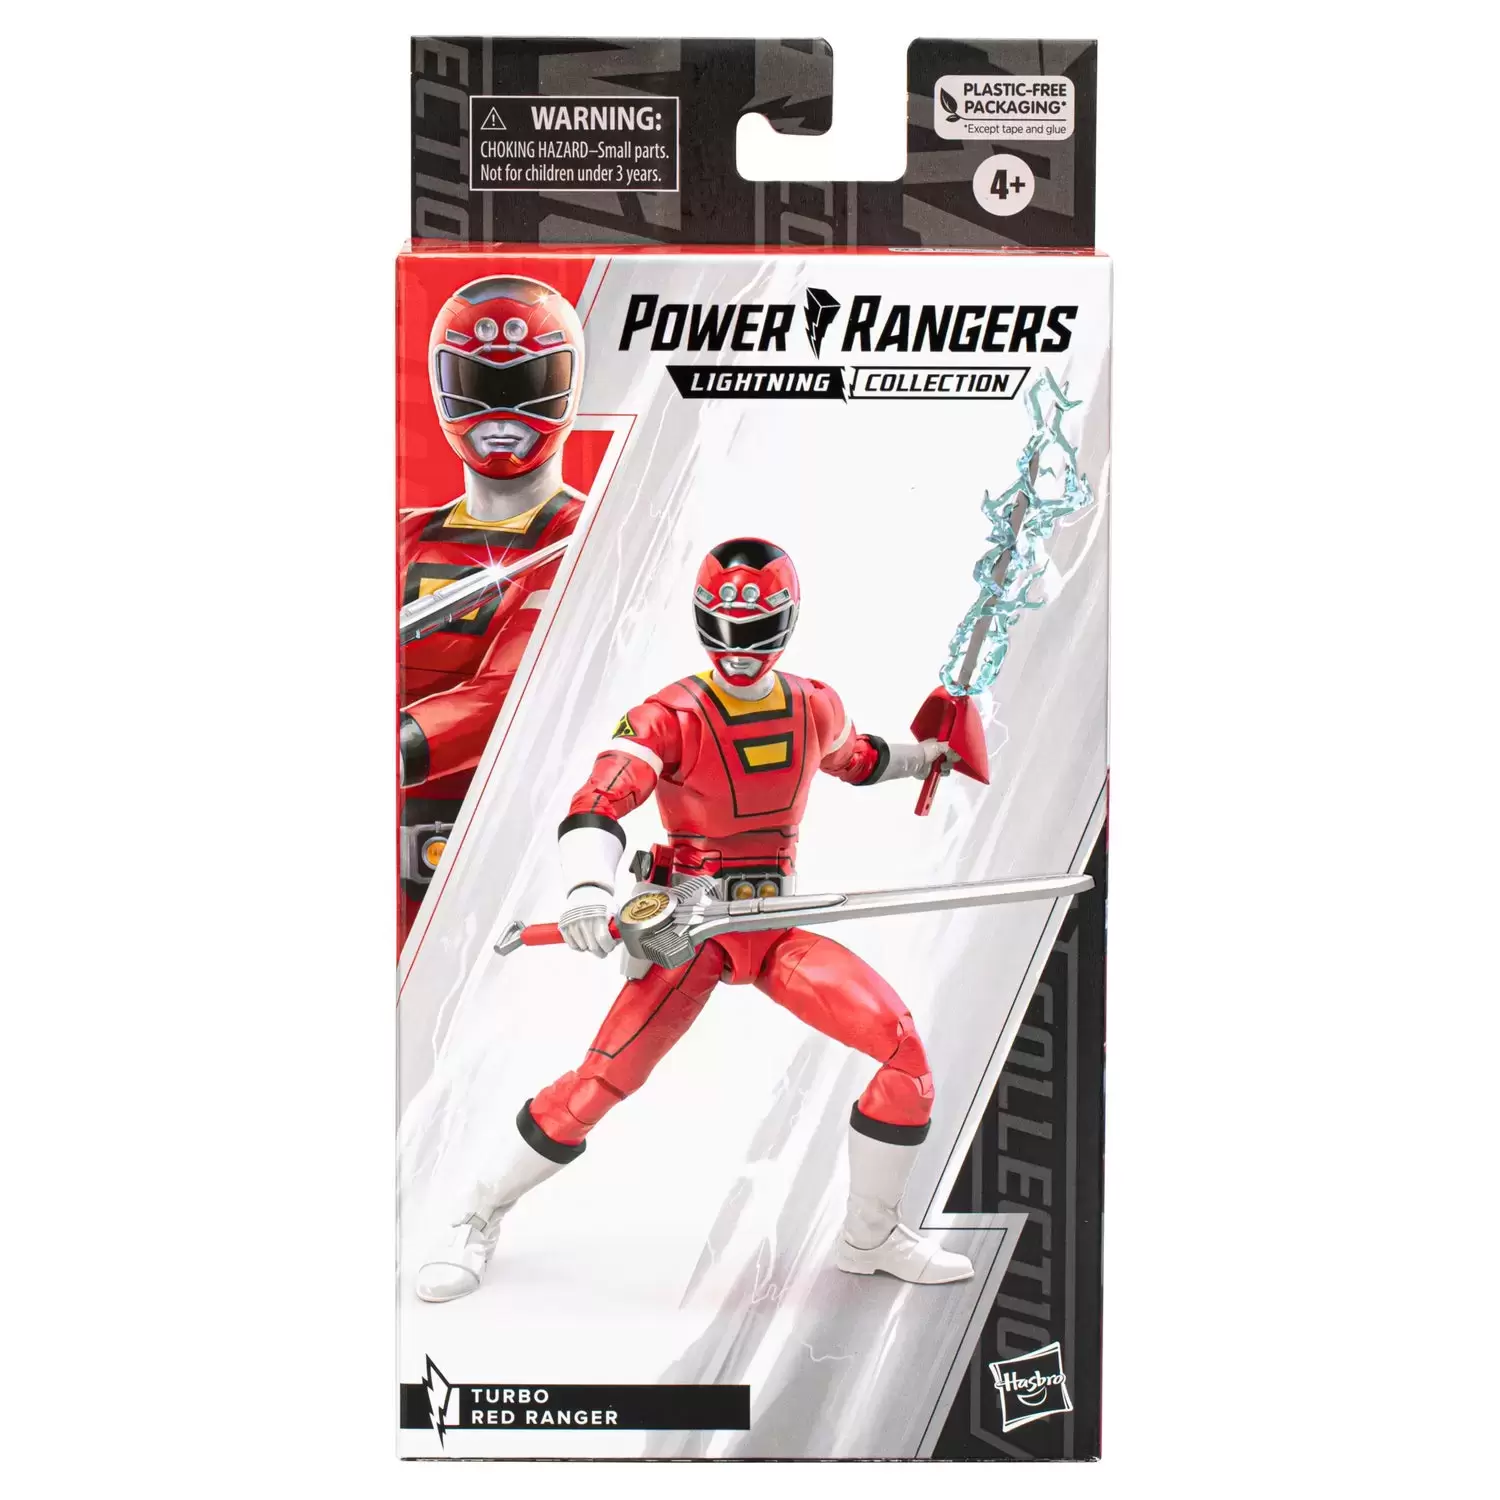 Power Rangers Hasbro - Lightning Collection - Turbo Red Ranger